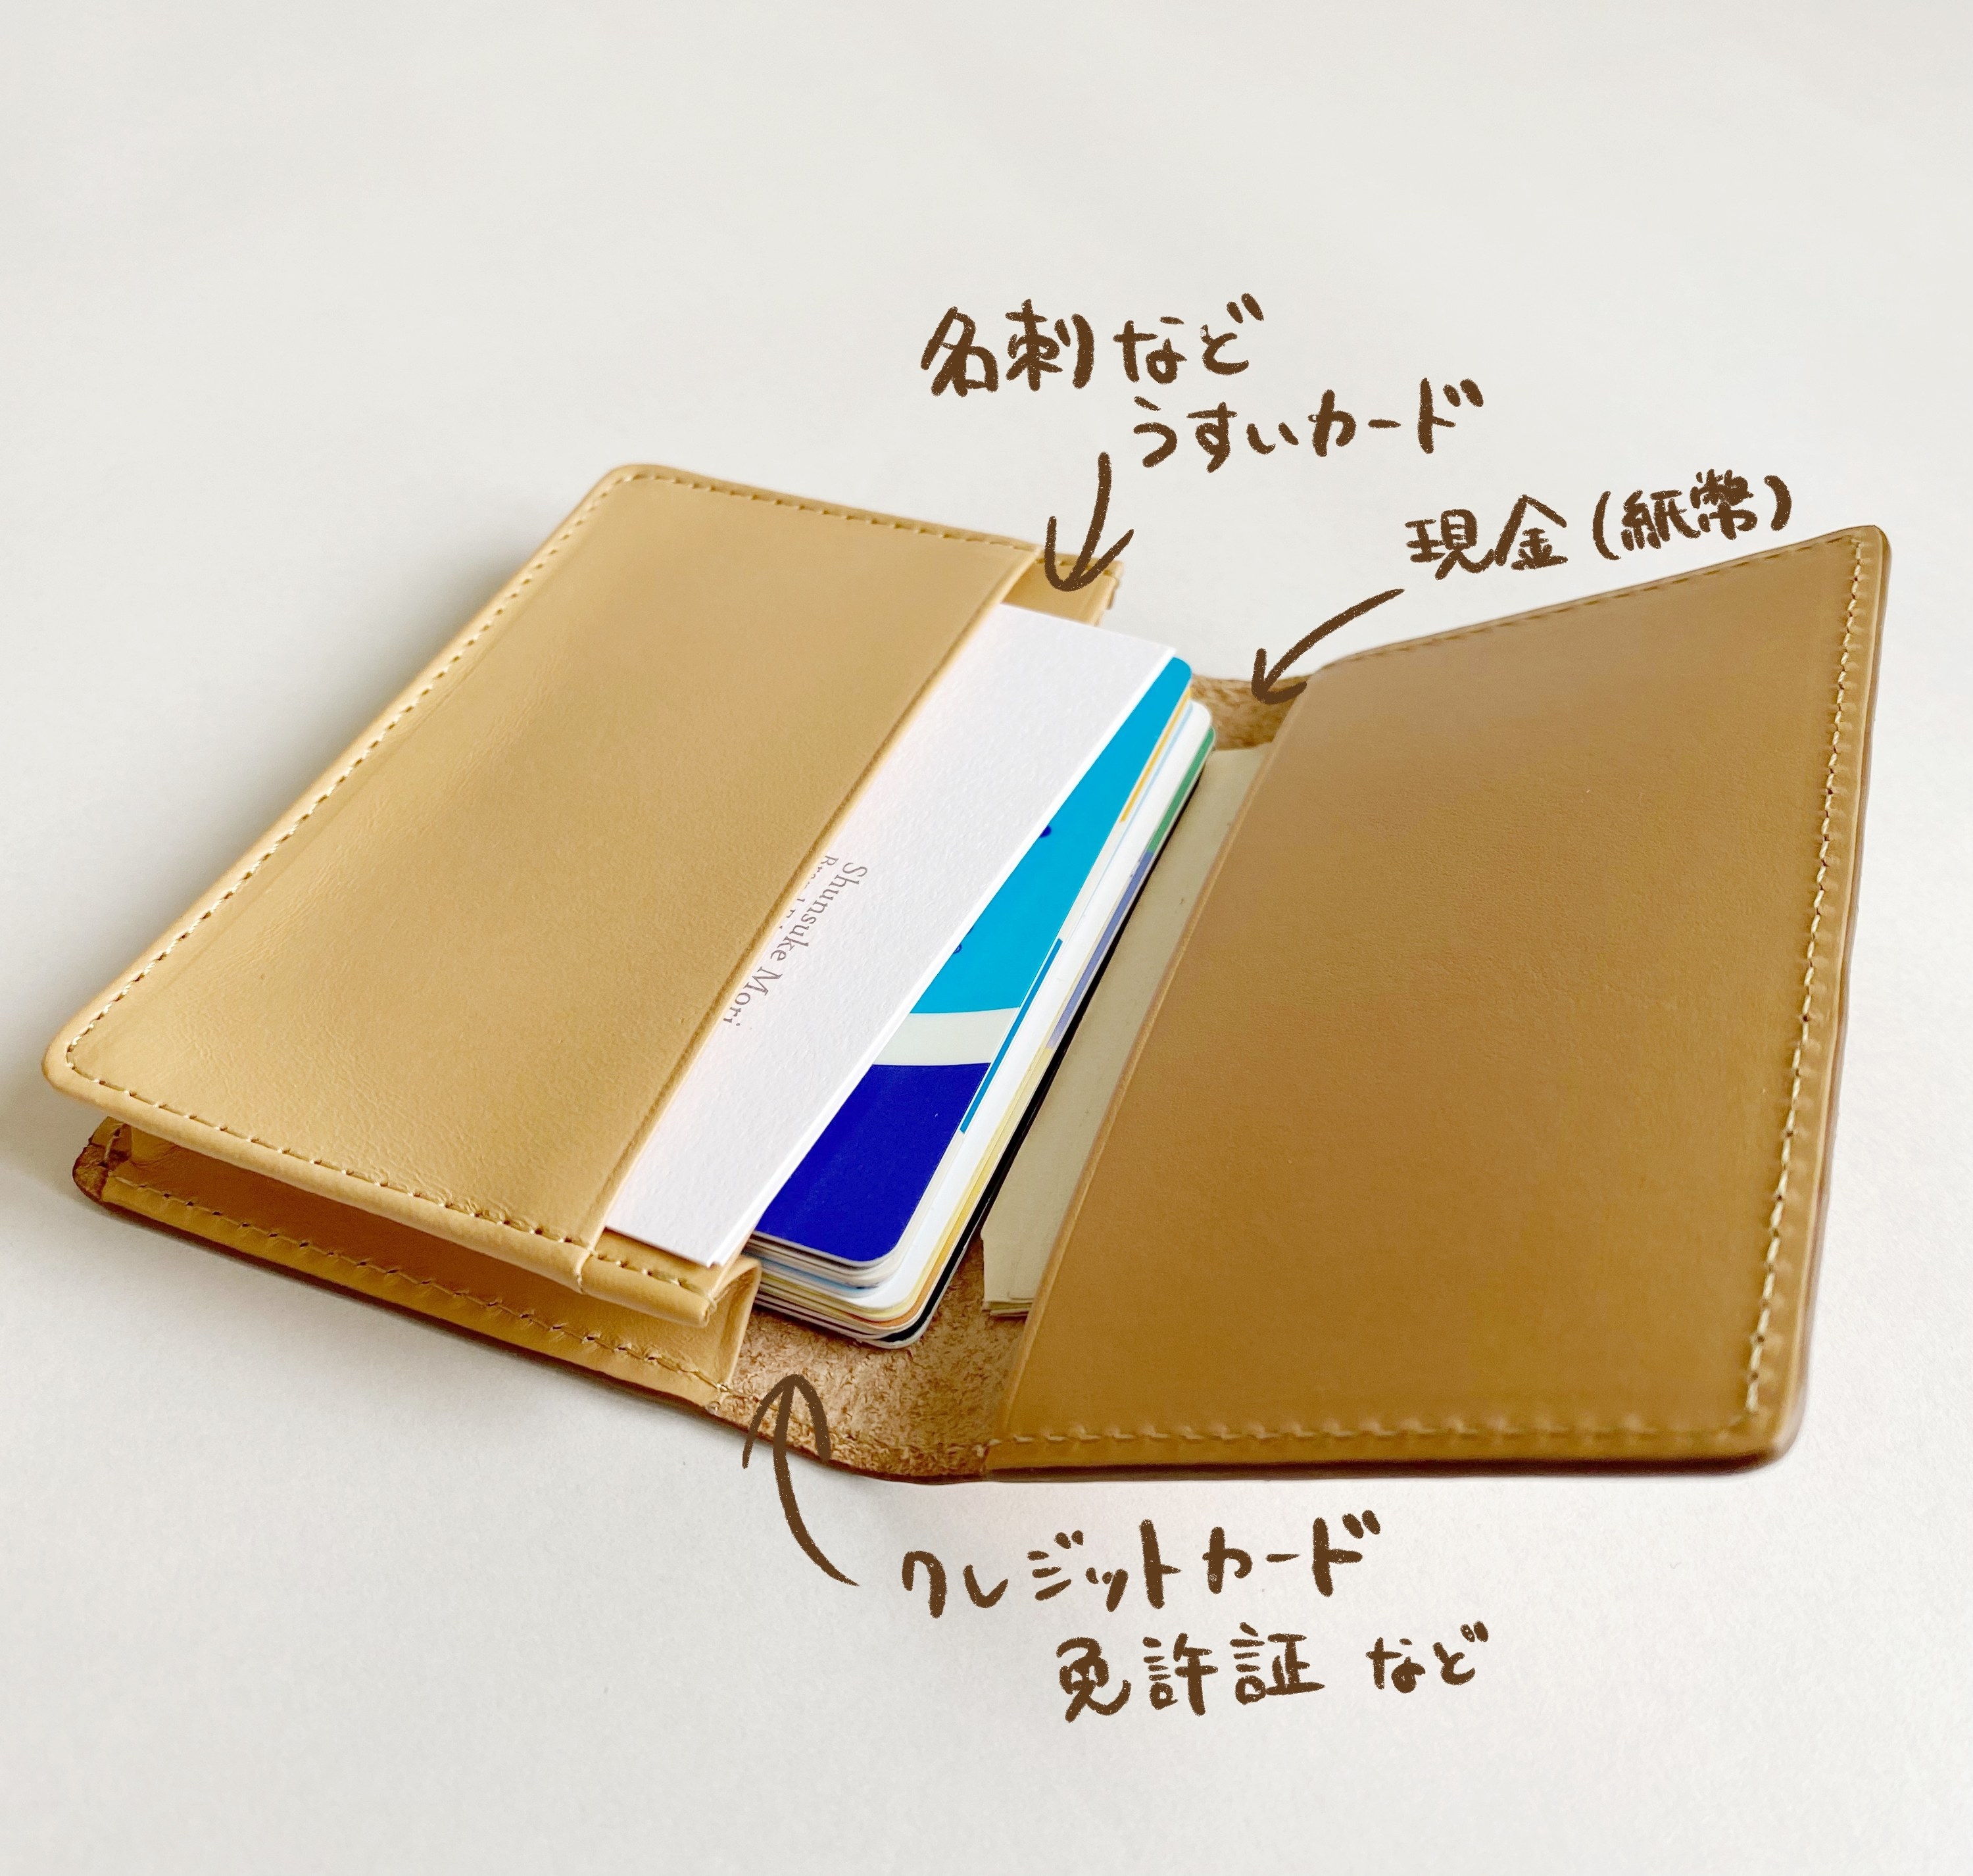 ミニ財布として使える 無印良品 革のカードケース がめっちゃ便利です